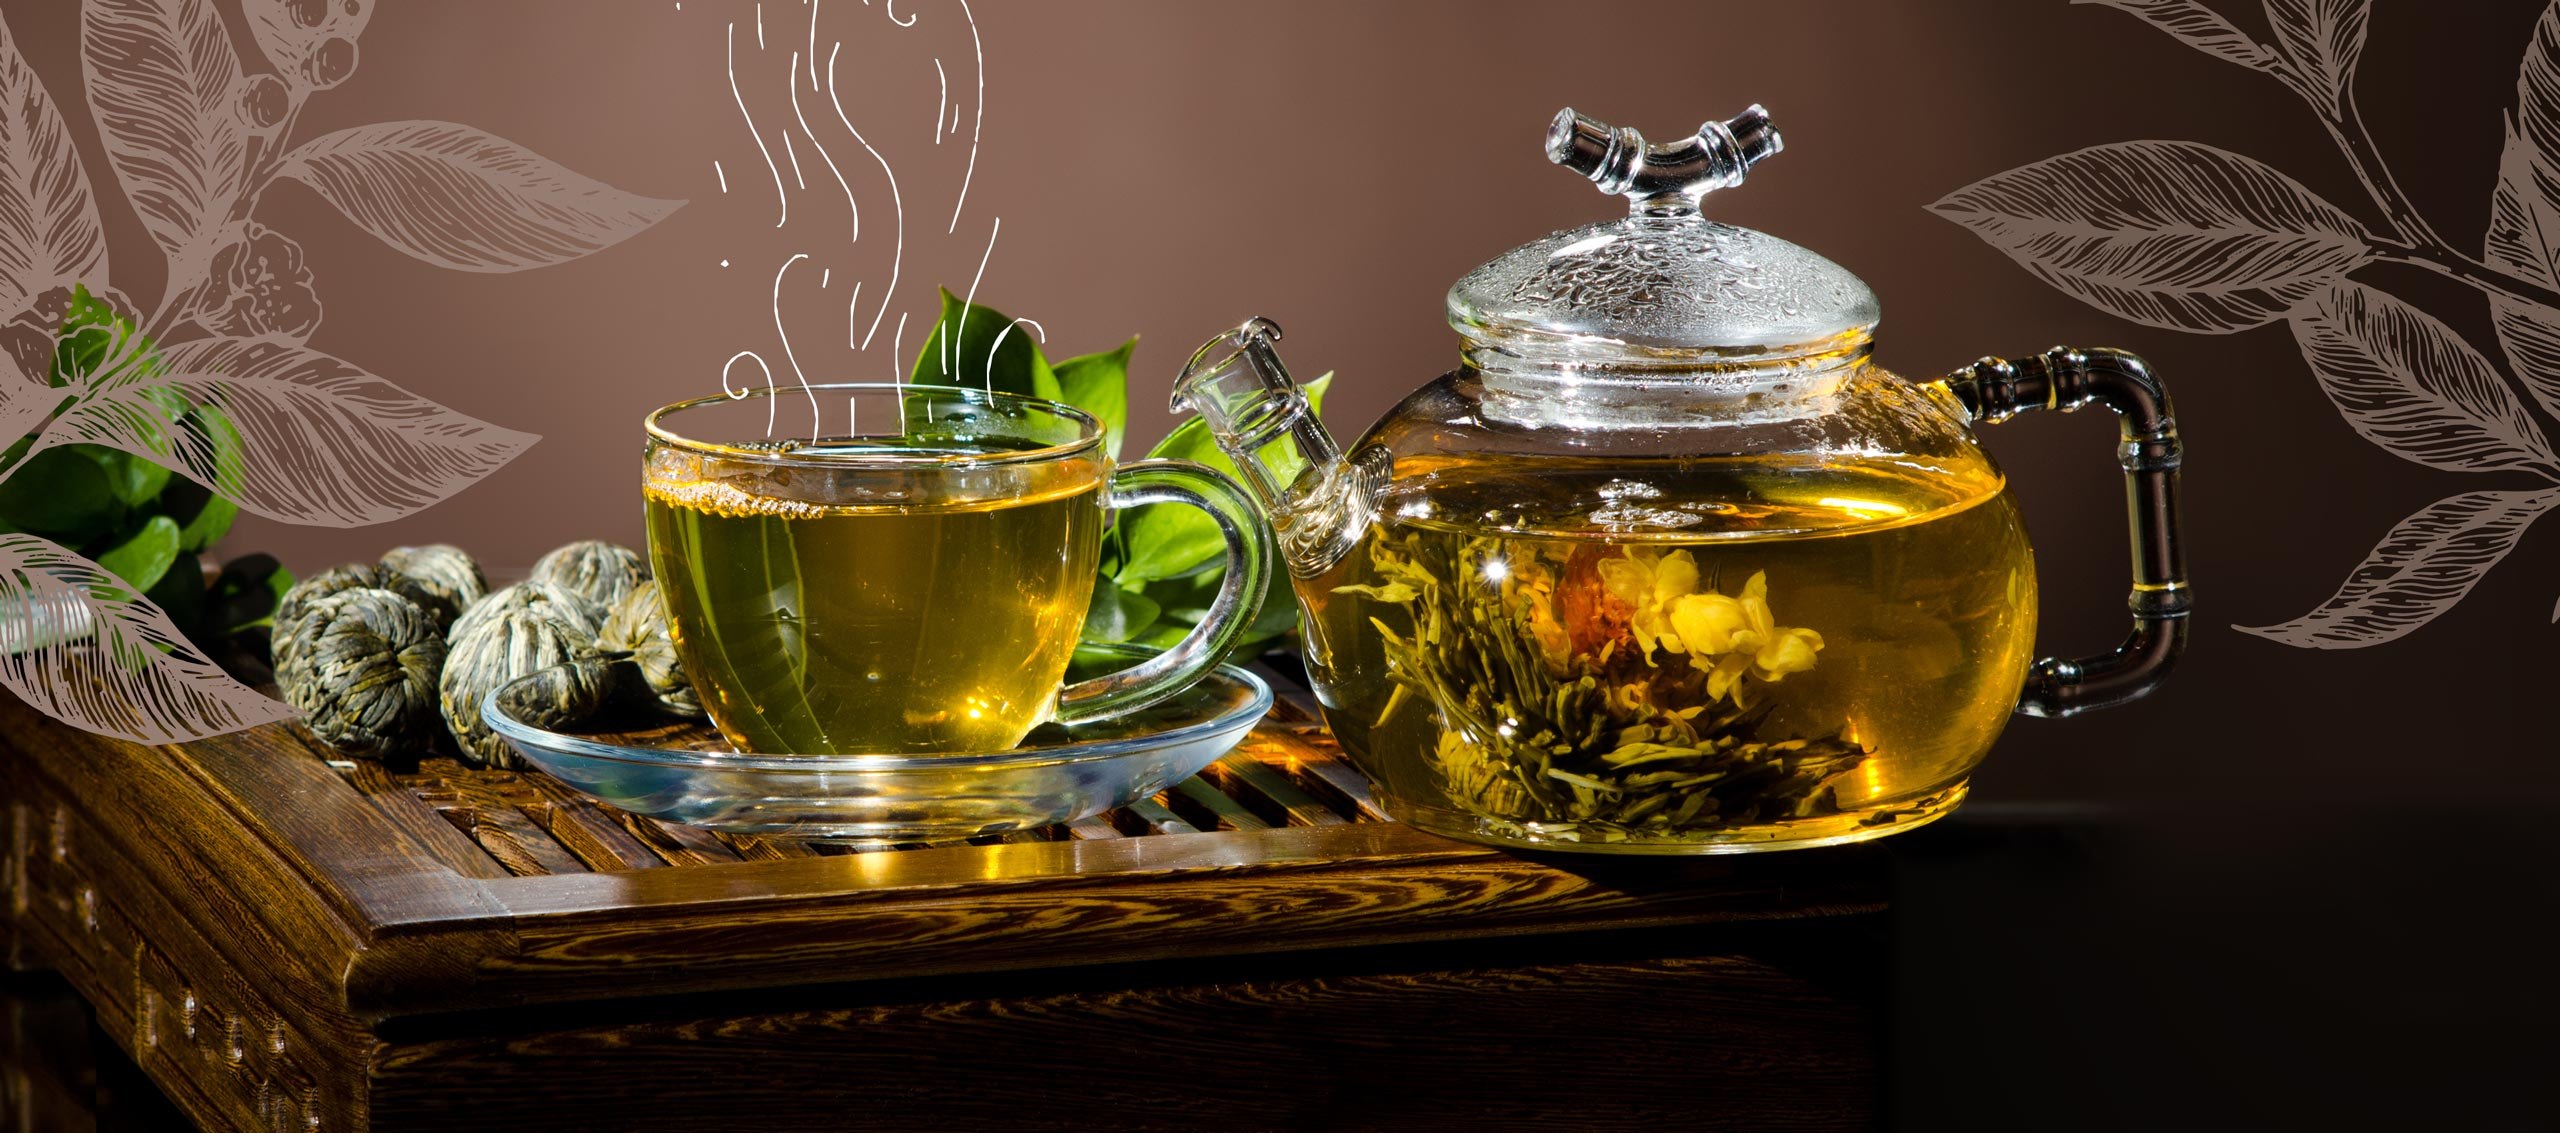 Зеленый чай вечером. Чай в чайнике. Зеленый чай. Красивый чай. Чай в заварнике.